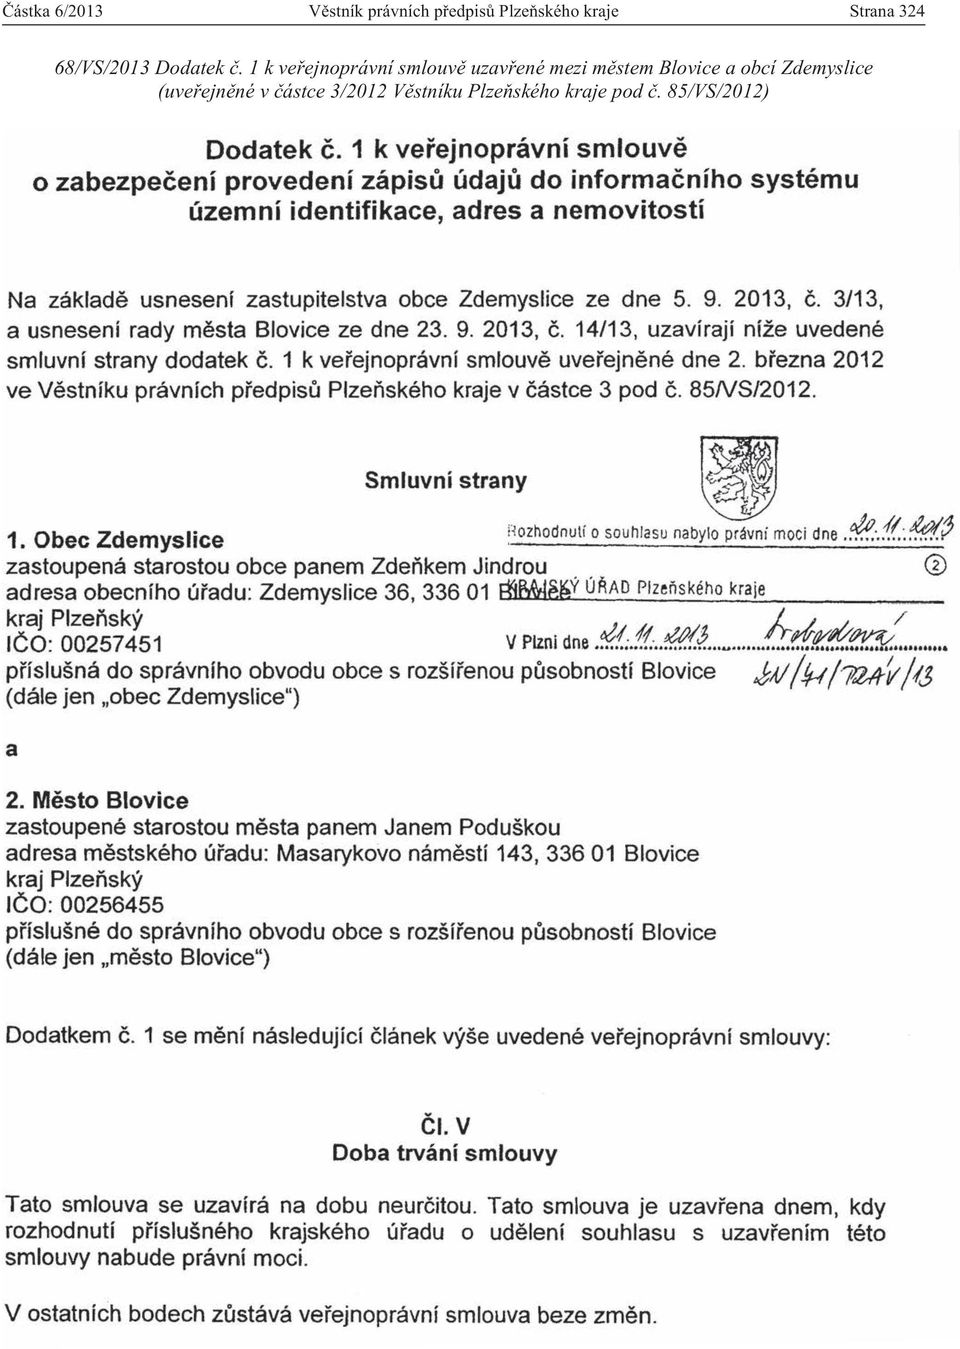 1 k veřejnoprávní smlouvě uzavřené mezi městem Blovice a